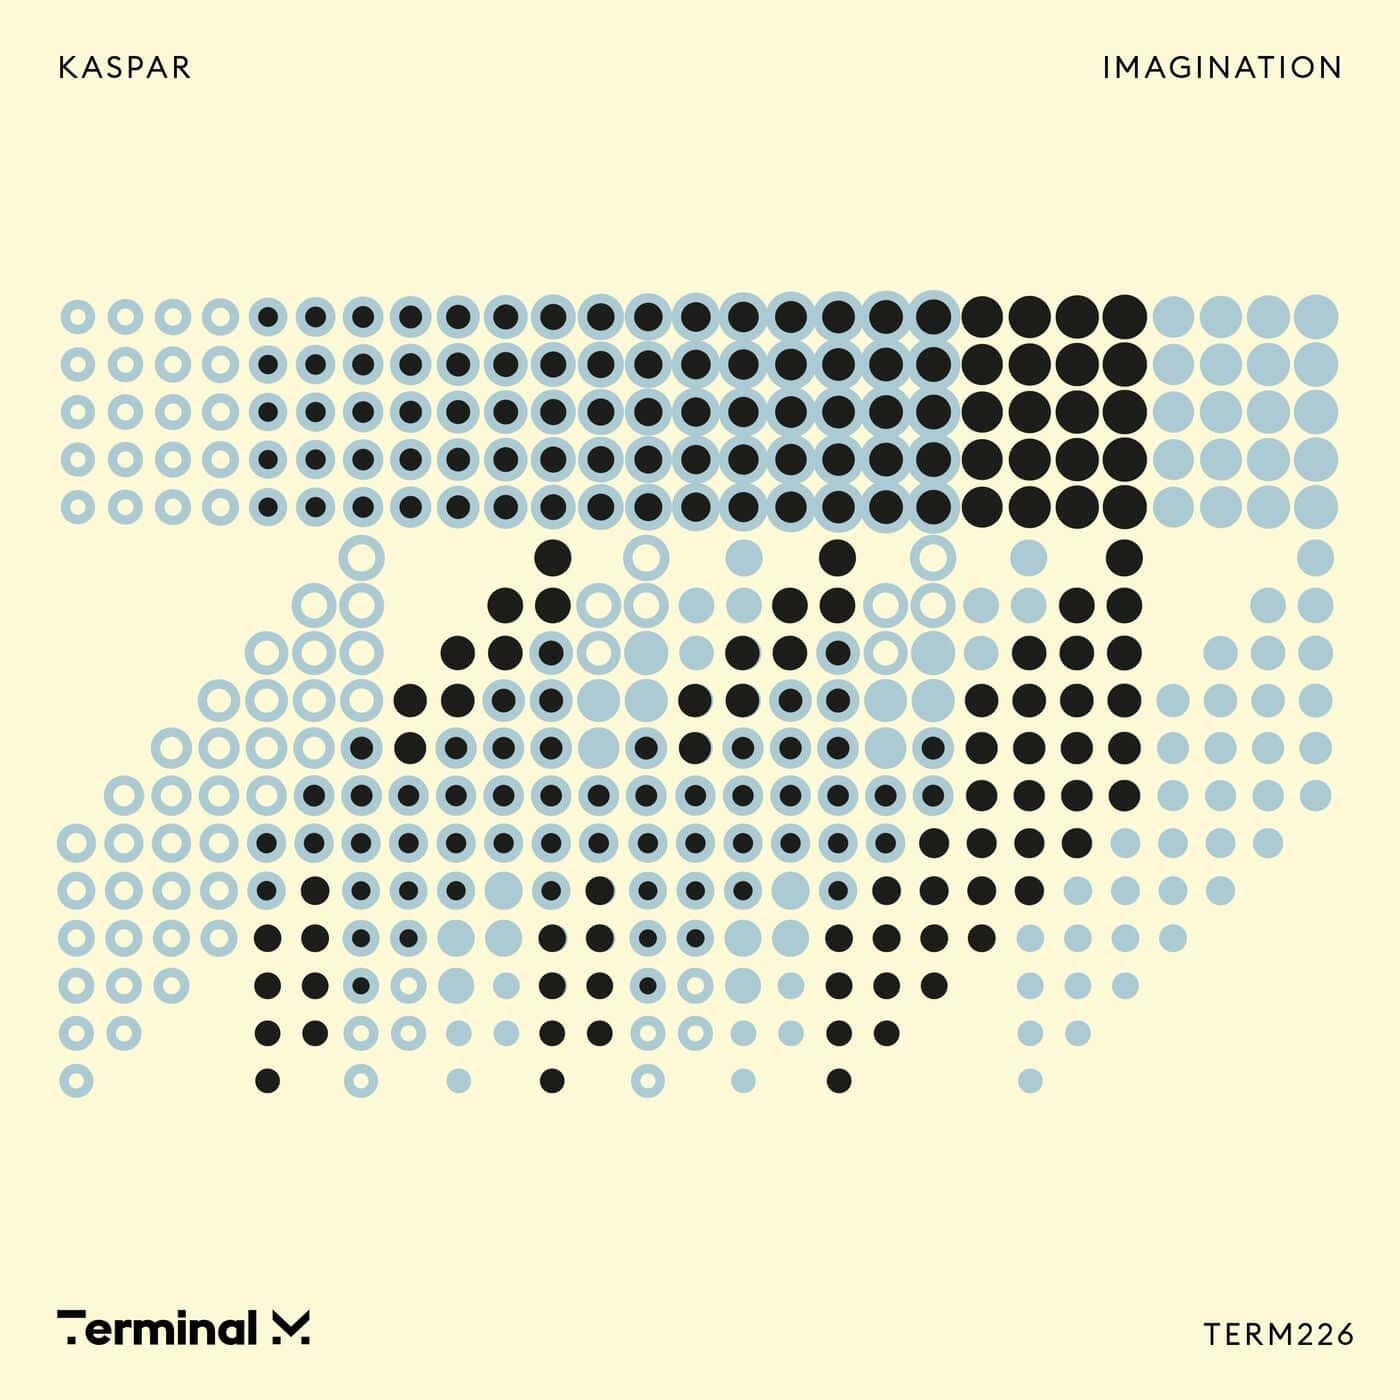 image cover: Imagination by Kaspar (DE) on Terminal M